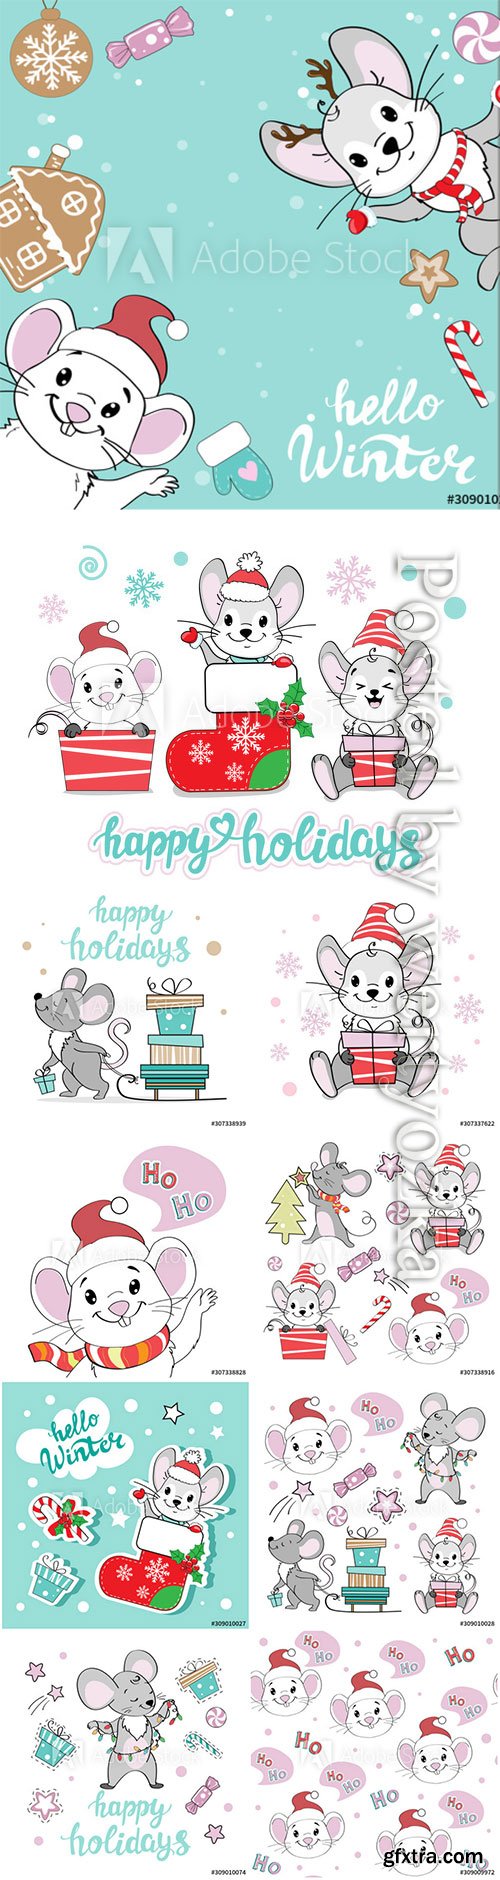 Christmas illustration set with Christmas mice on a 